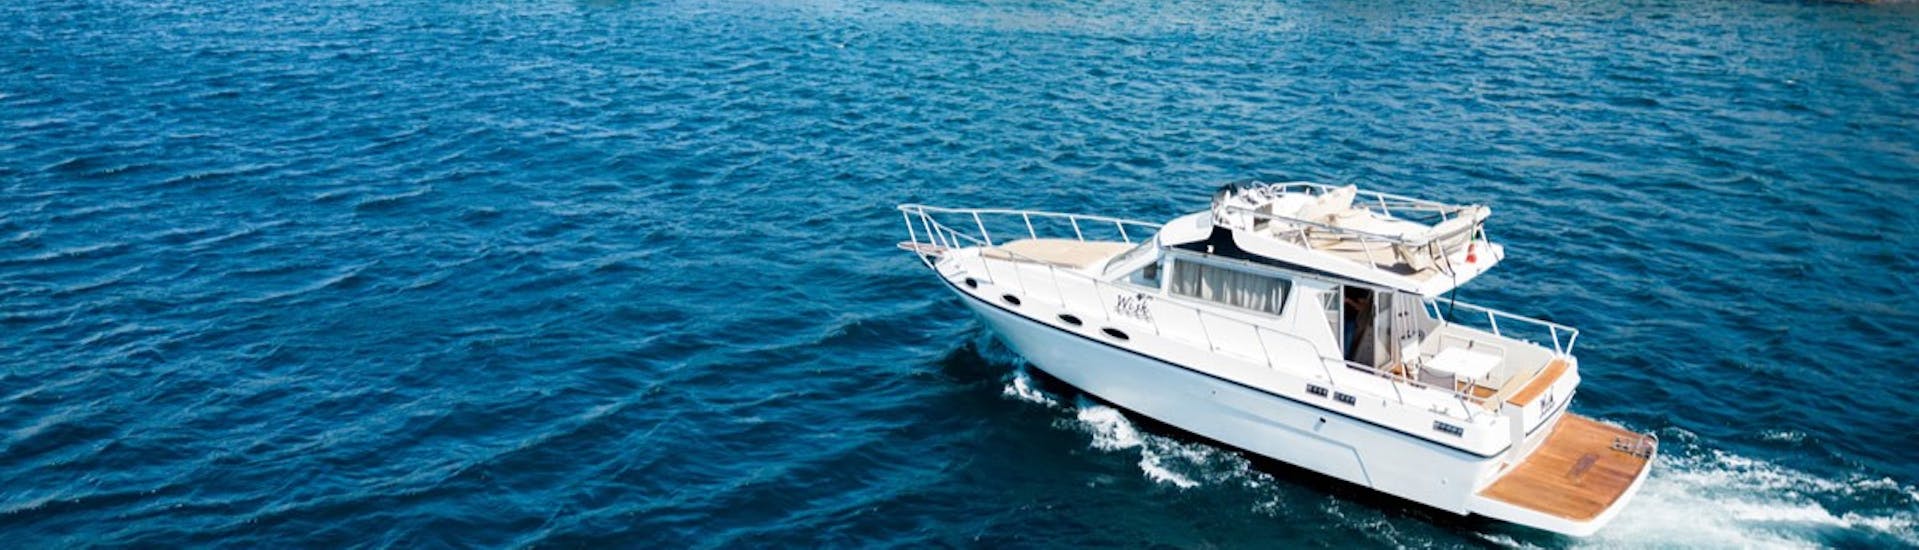 La barca Wish usata per la Gita in barca privata da Catania alle Isole dei Ciclopi con aperitivo con Wish Boat Rent Catania.